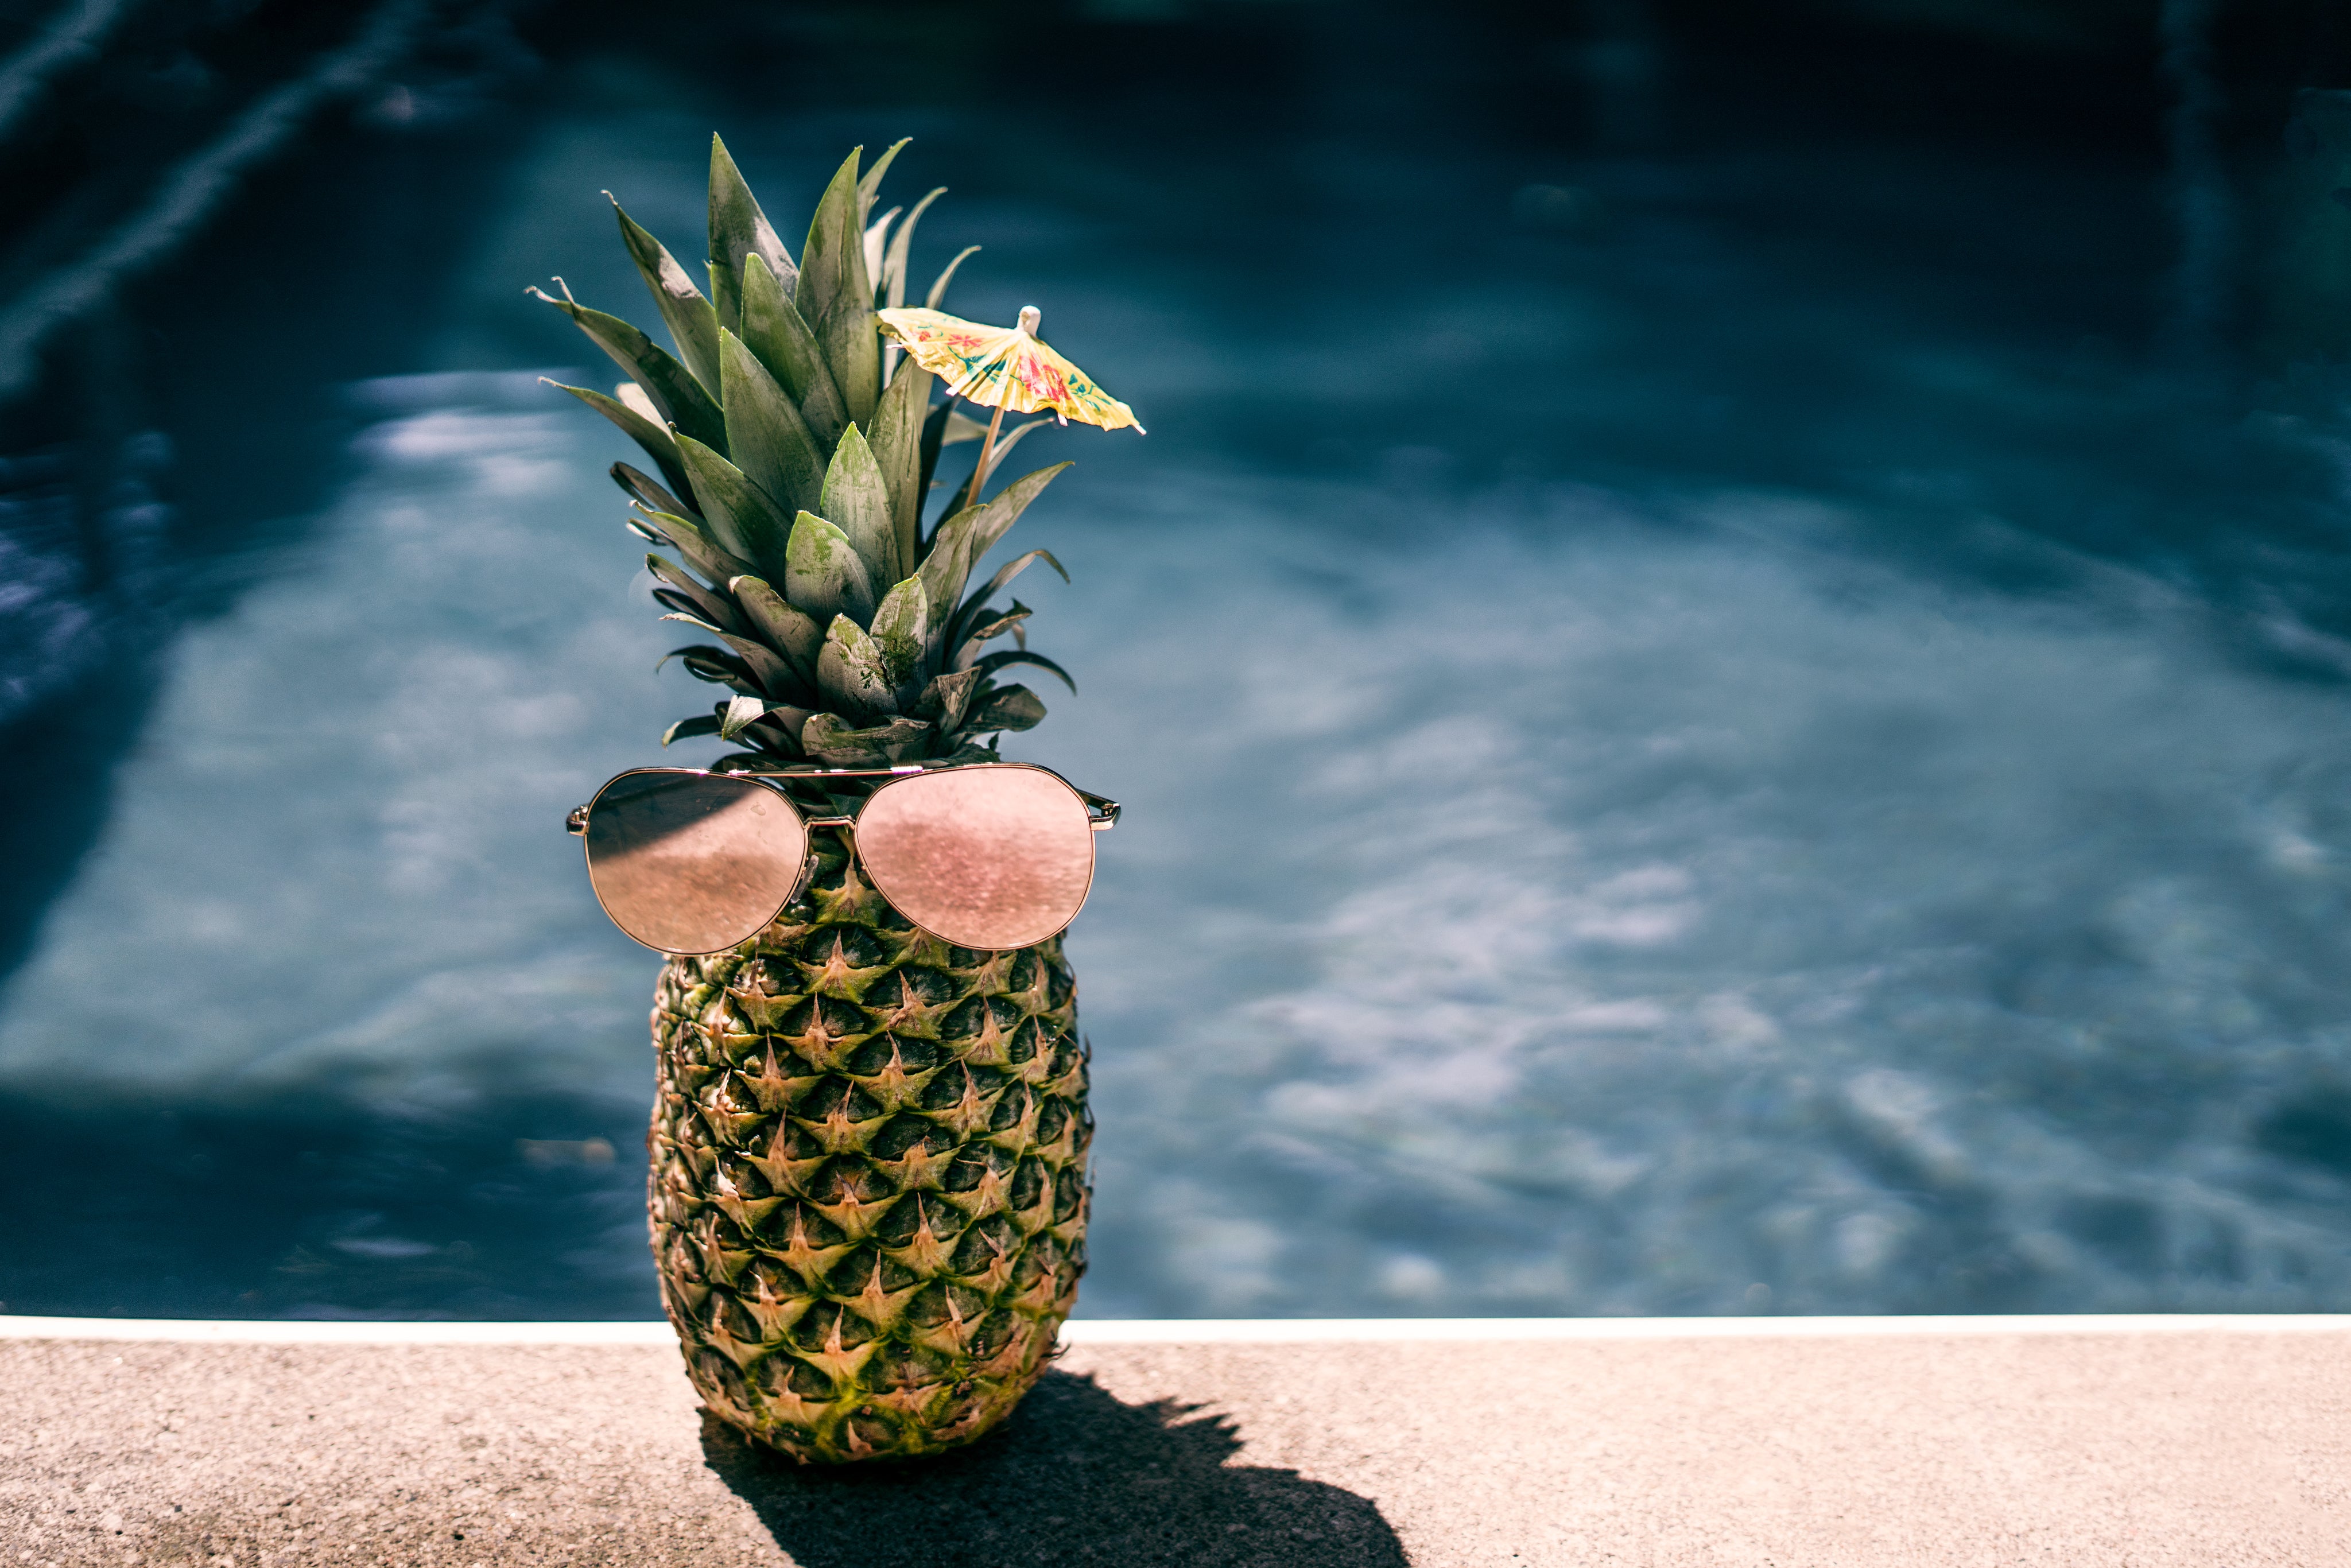 files/cool-pool-pineapple.jpg